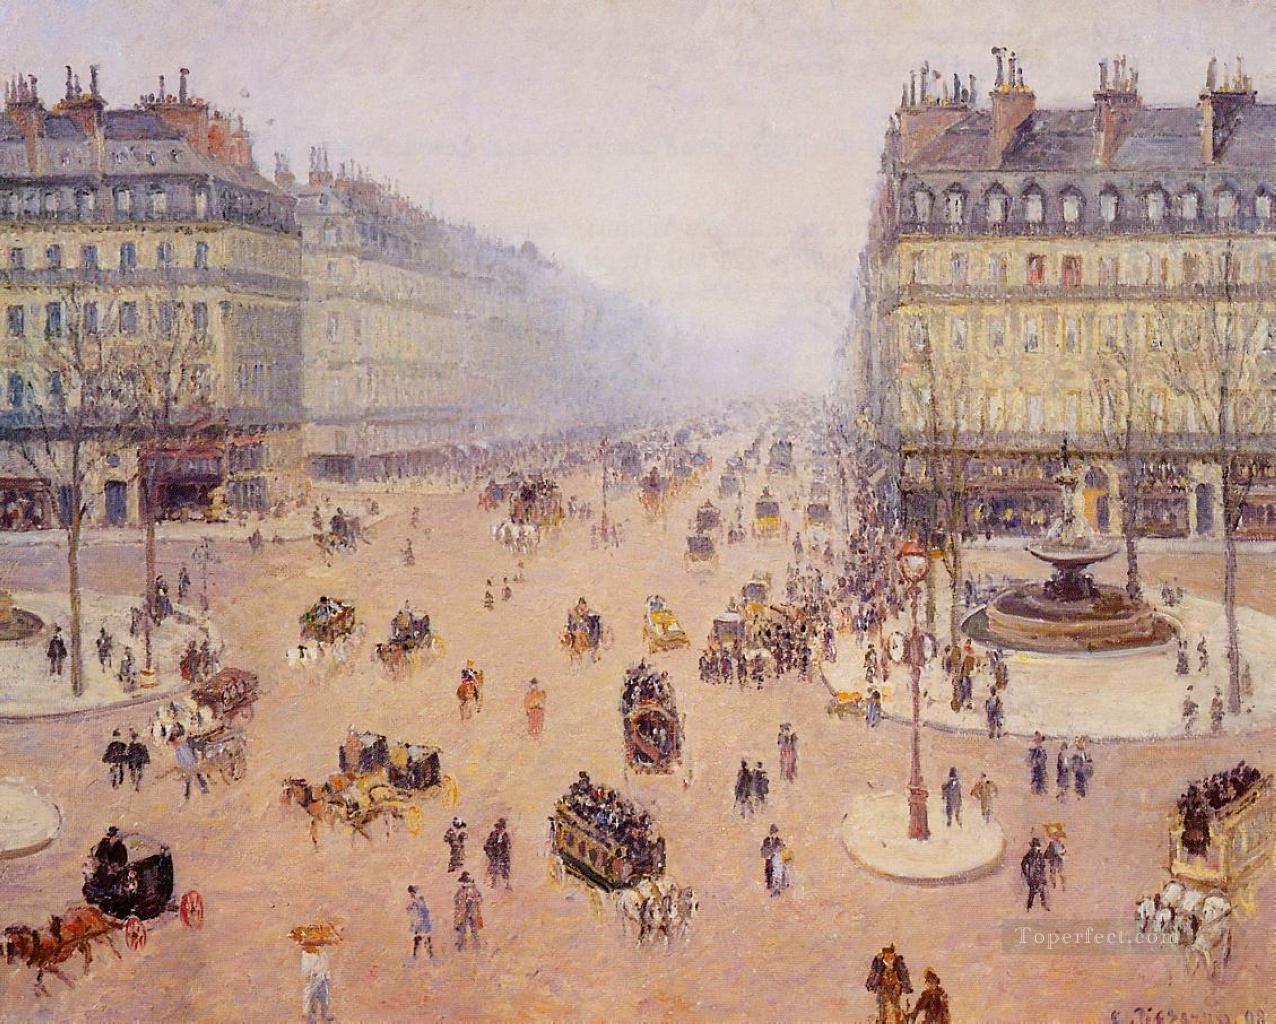 オペラ大通り フランスのスロットル広場 霧の天気 1898年 カミーユ・ピサロ パリジャン油絵